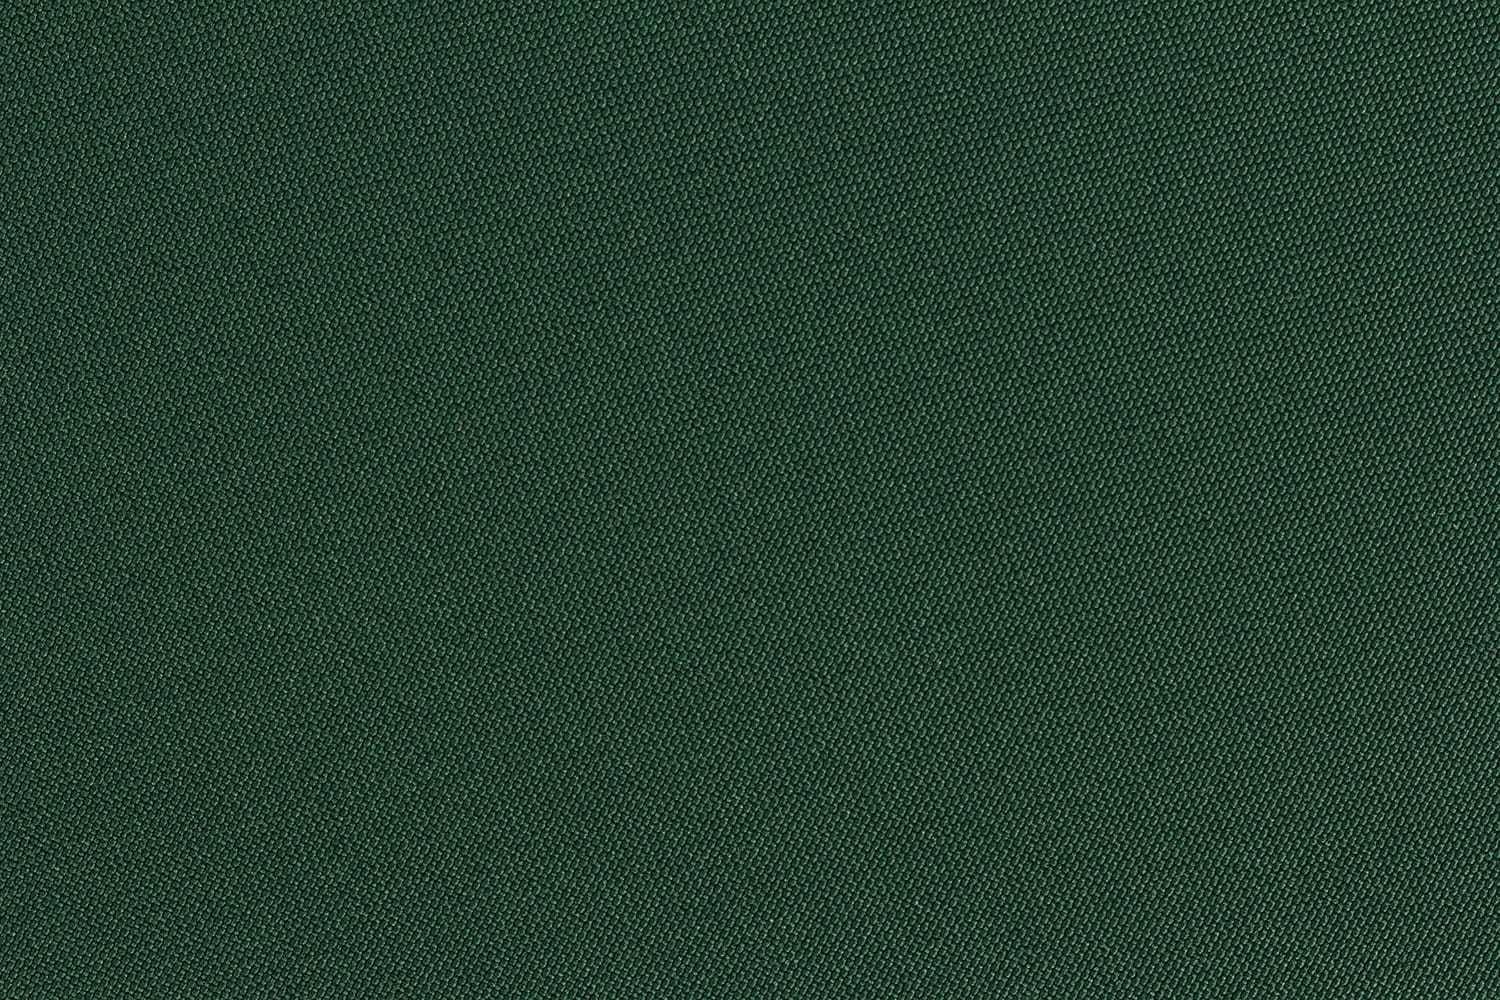 mutoni Gartenkissen für quadratische Sitzfläche 42x42 dunkelgrün  